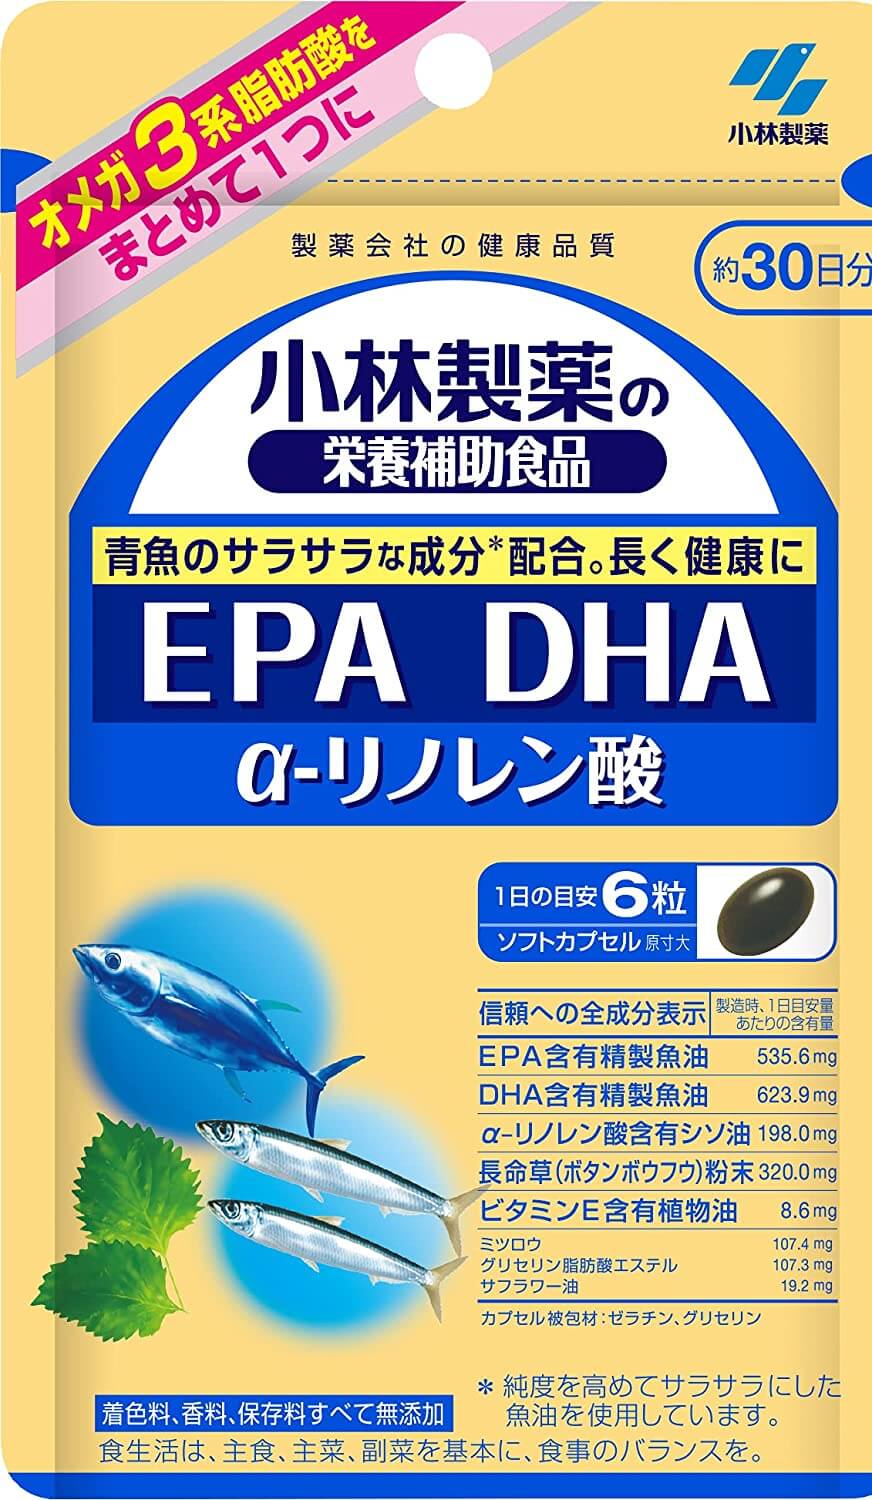 Пищевая добавка DHA & EPA, 180 капсул